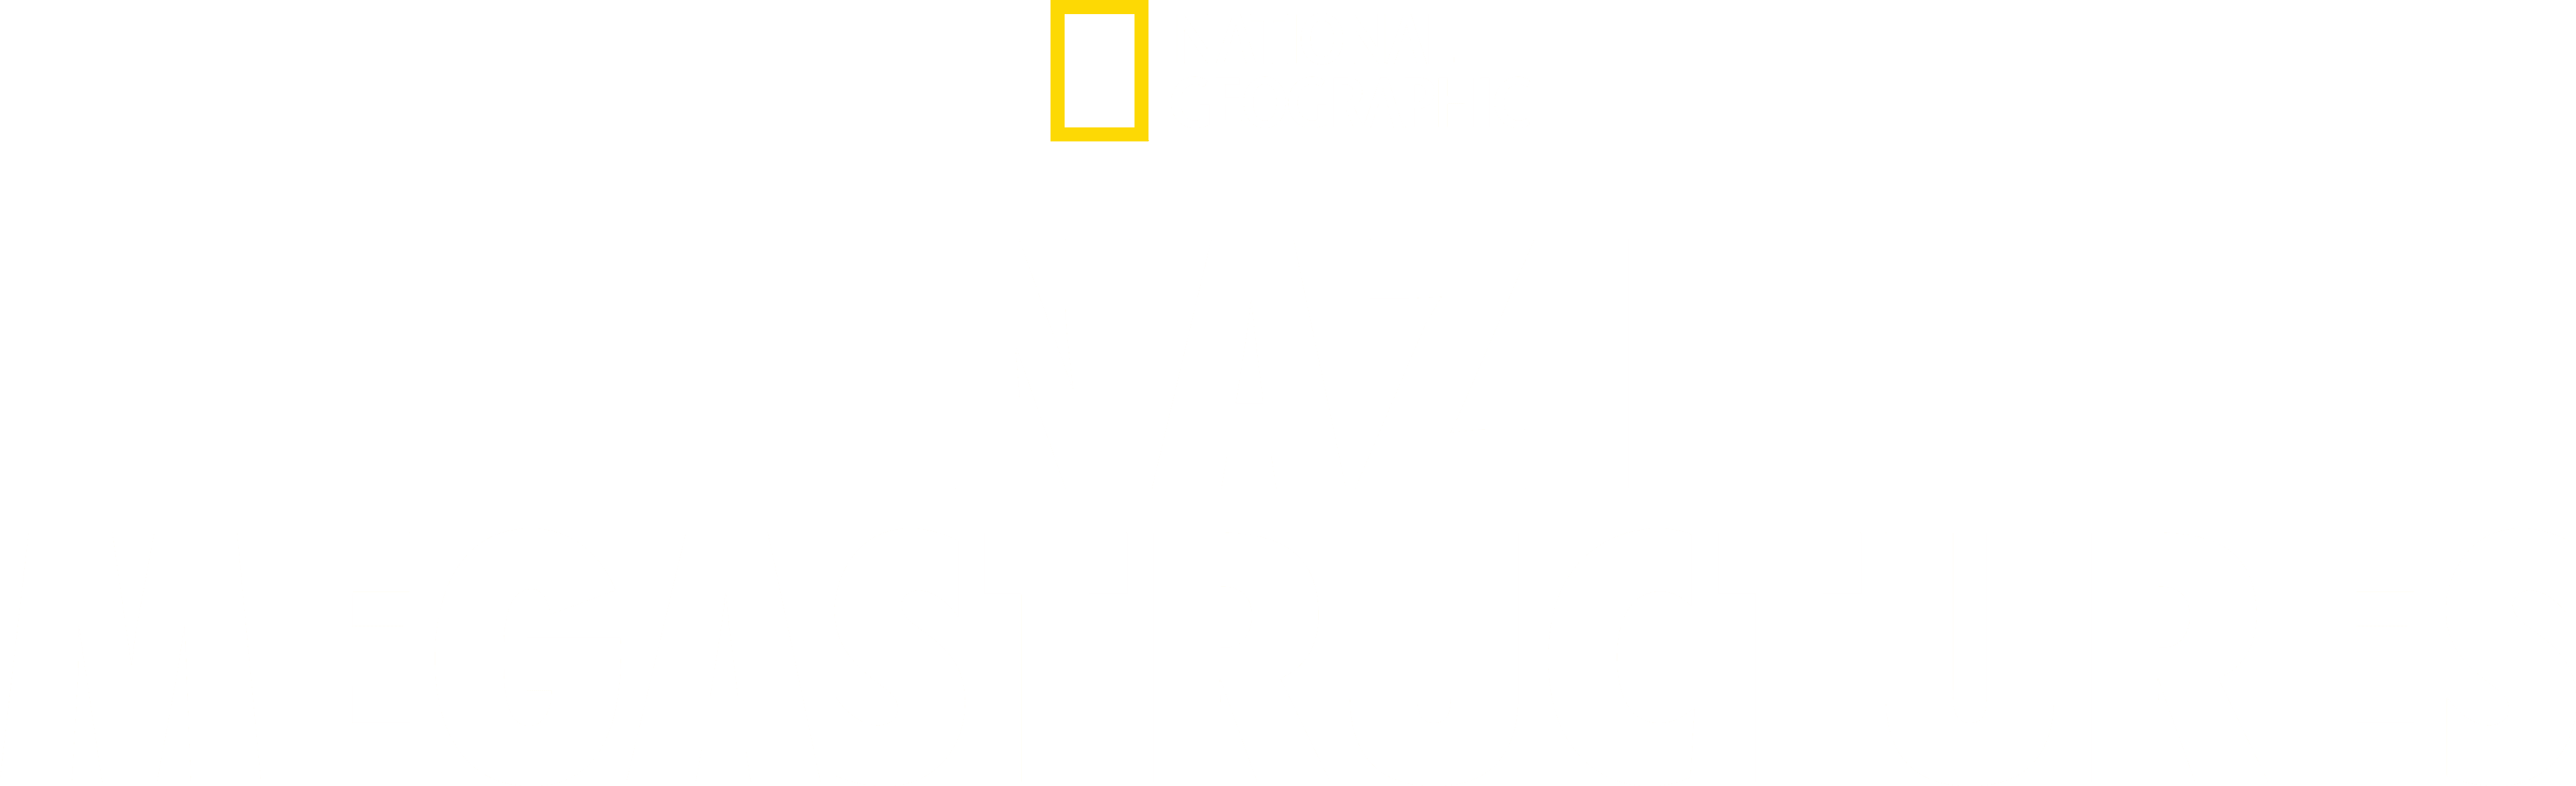 Nazi Megastructures logo